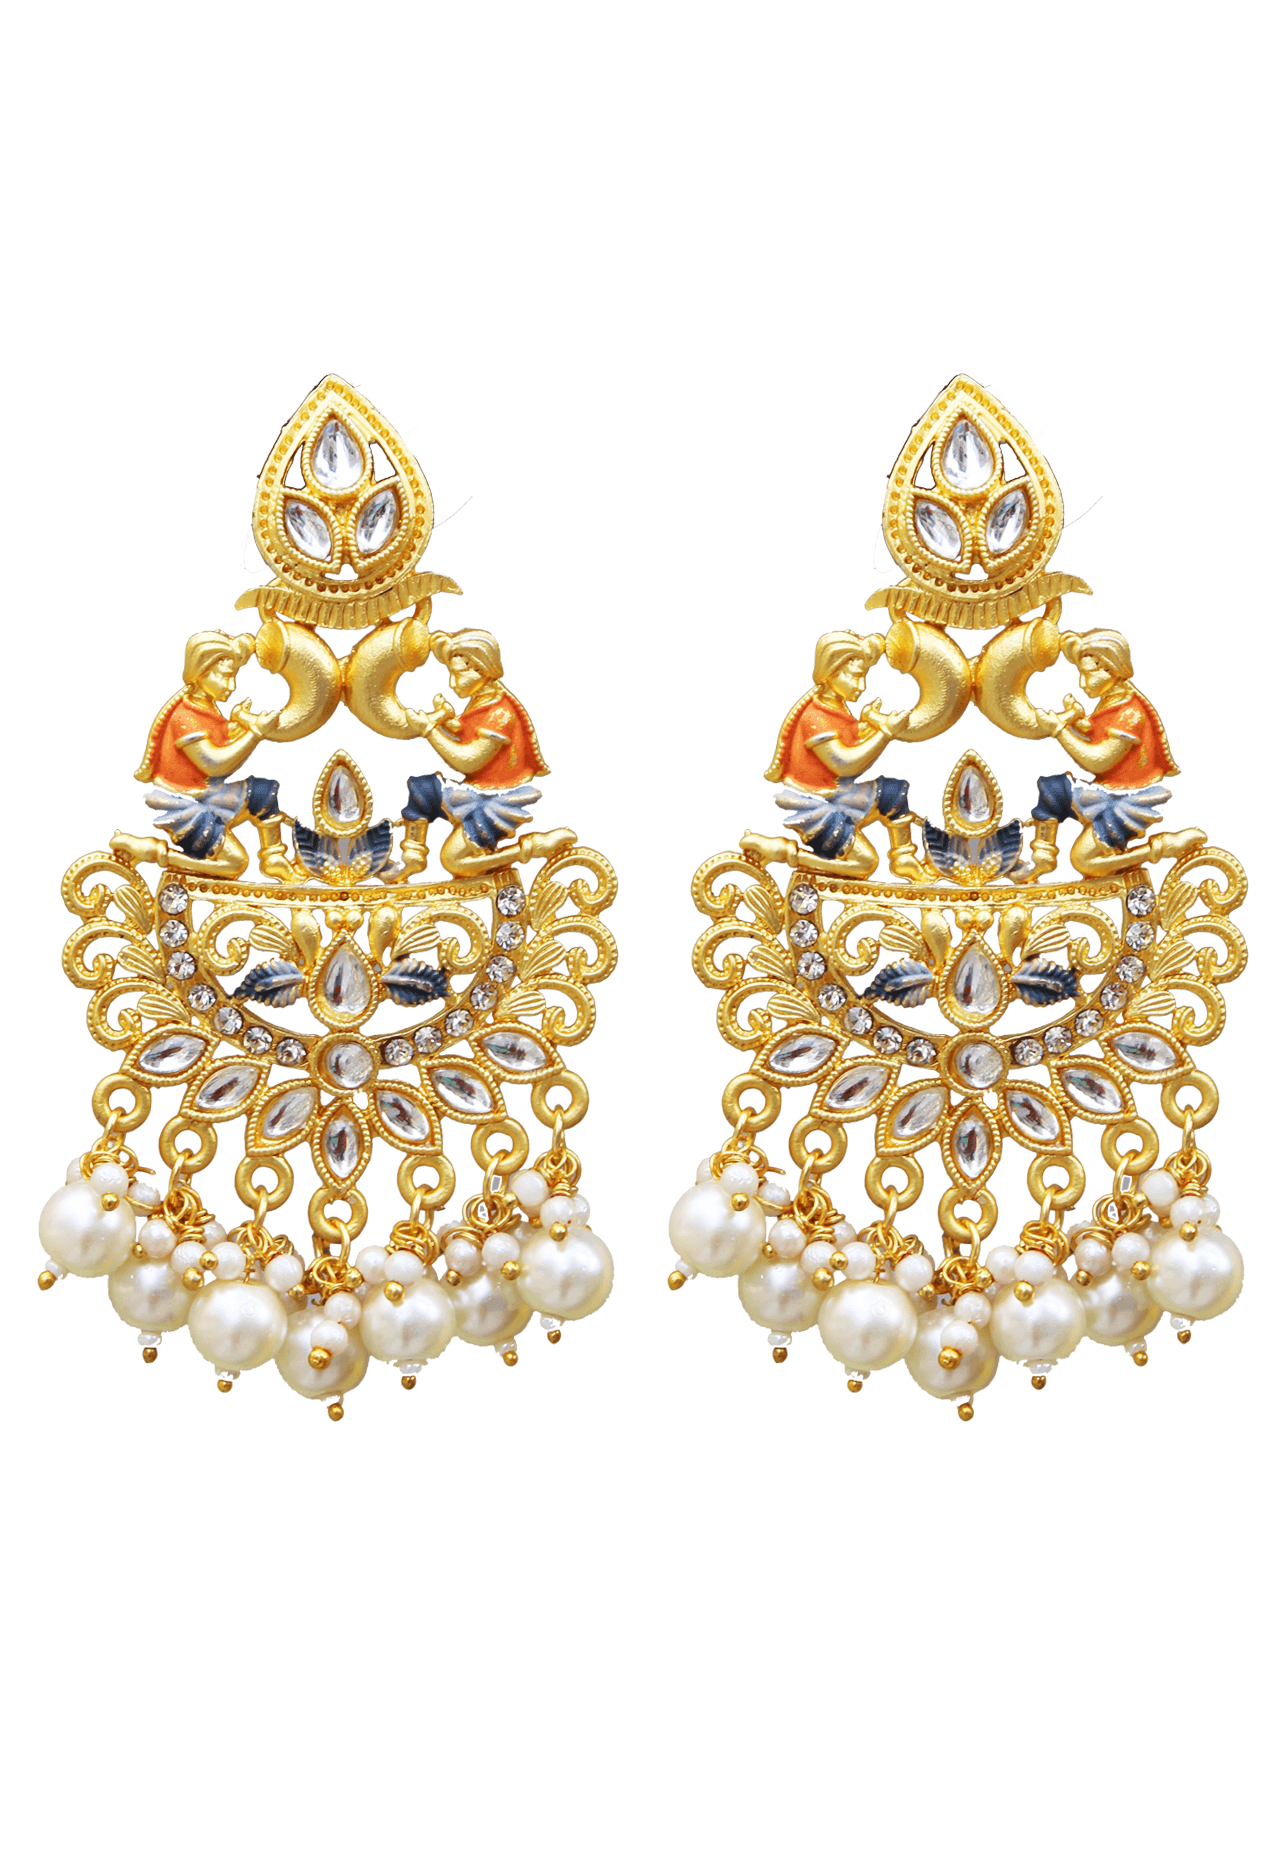 Temple Jewellery - 22K Gold Hook Jhumkas (Buttalu) - Gold Dangle Earrings  With Beads - 235-GJH2380 in 15.300 Grams